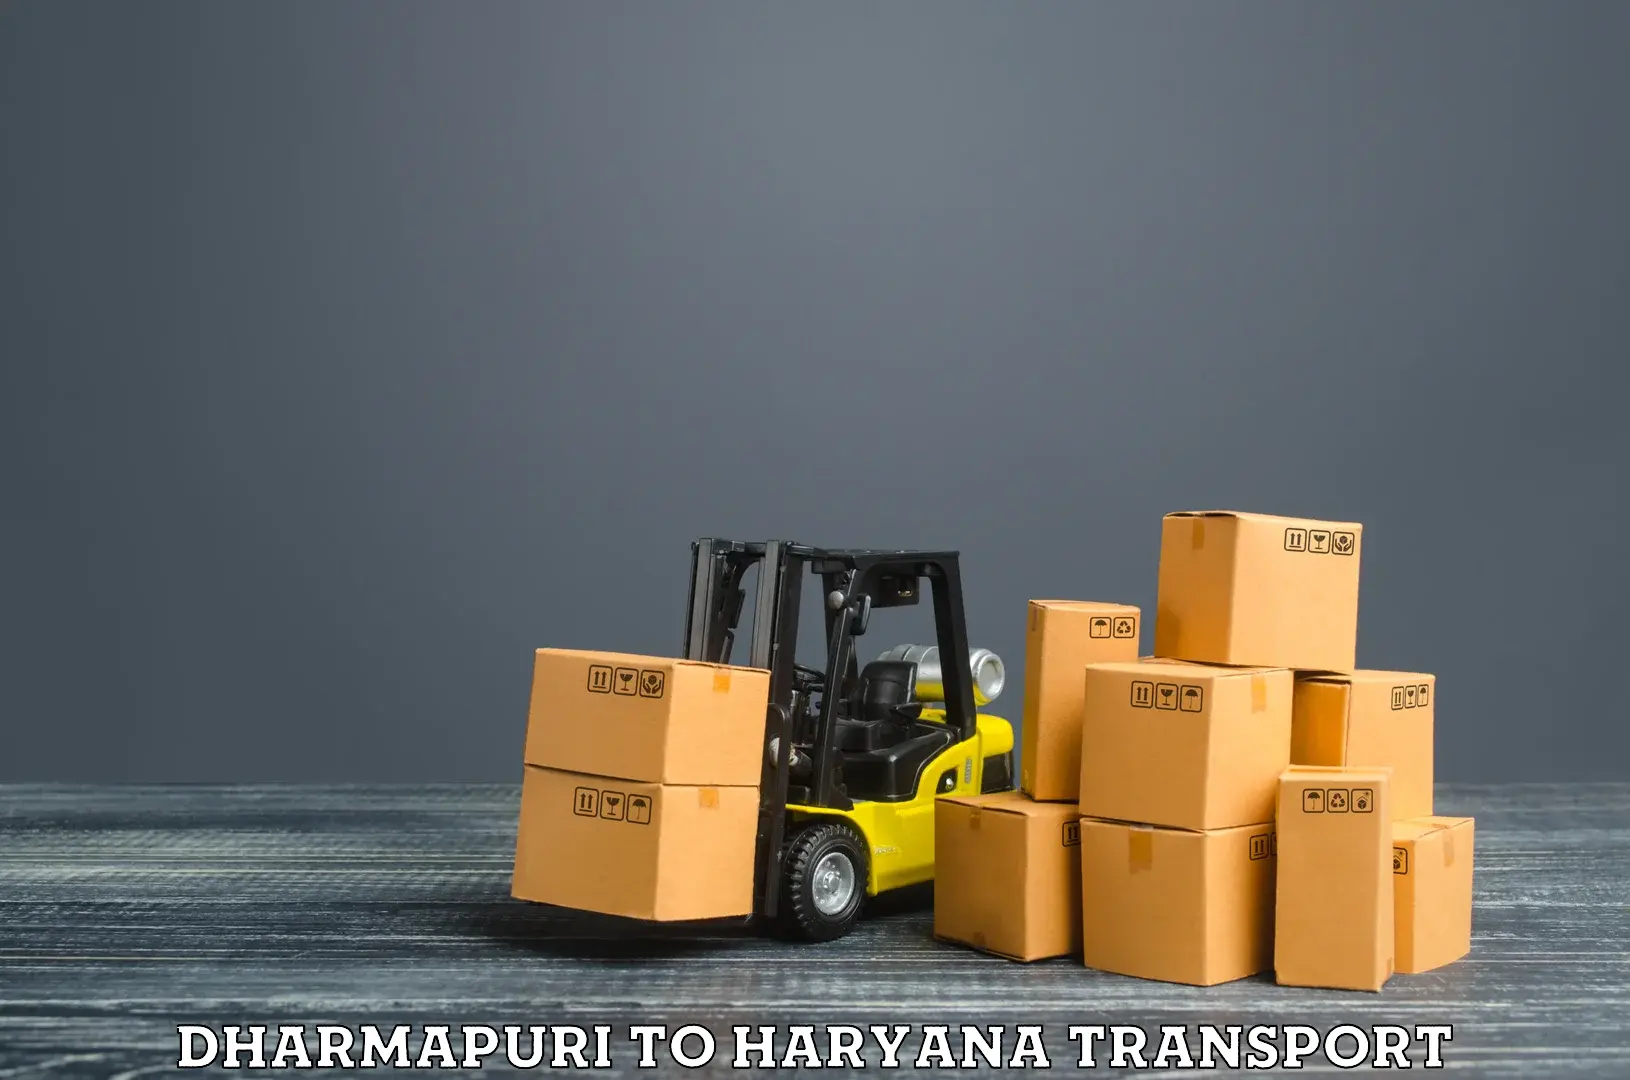 Parcel transport services Dharmapuri to Kurukshetra